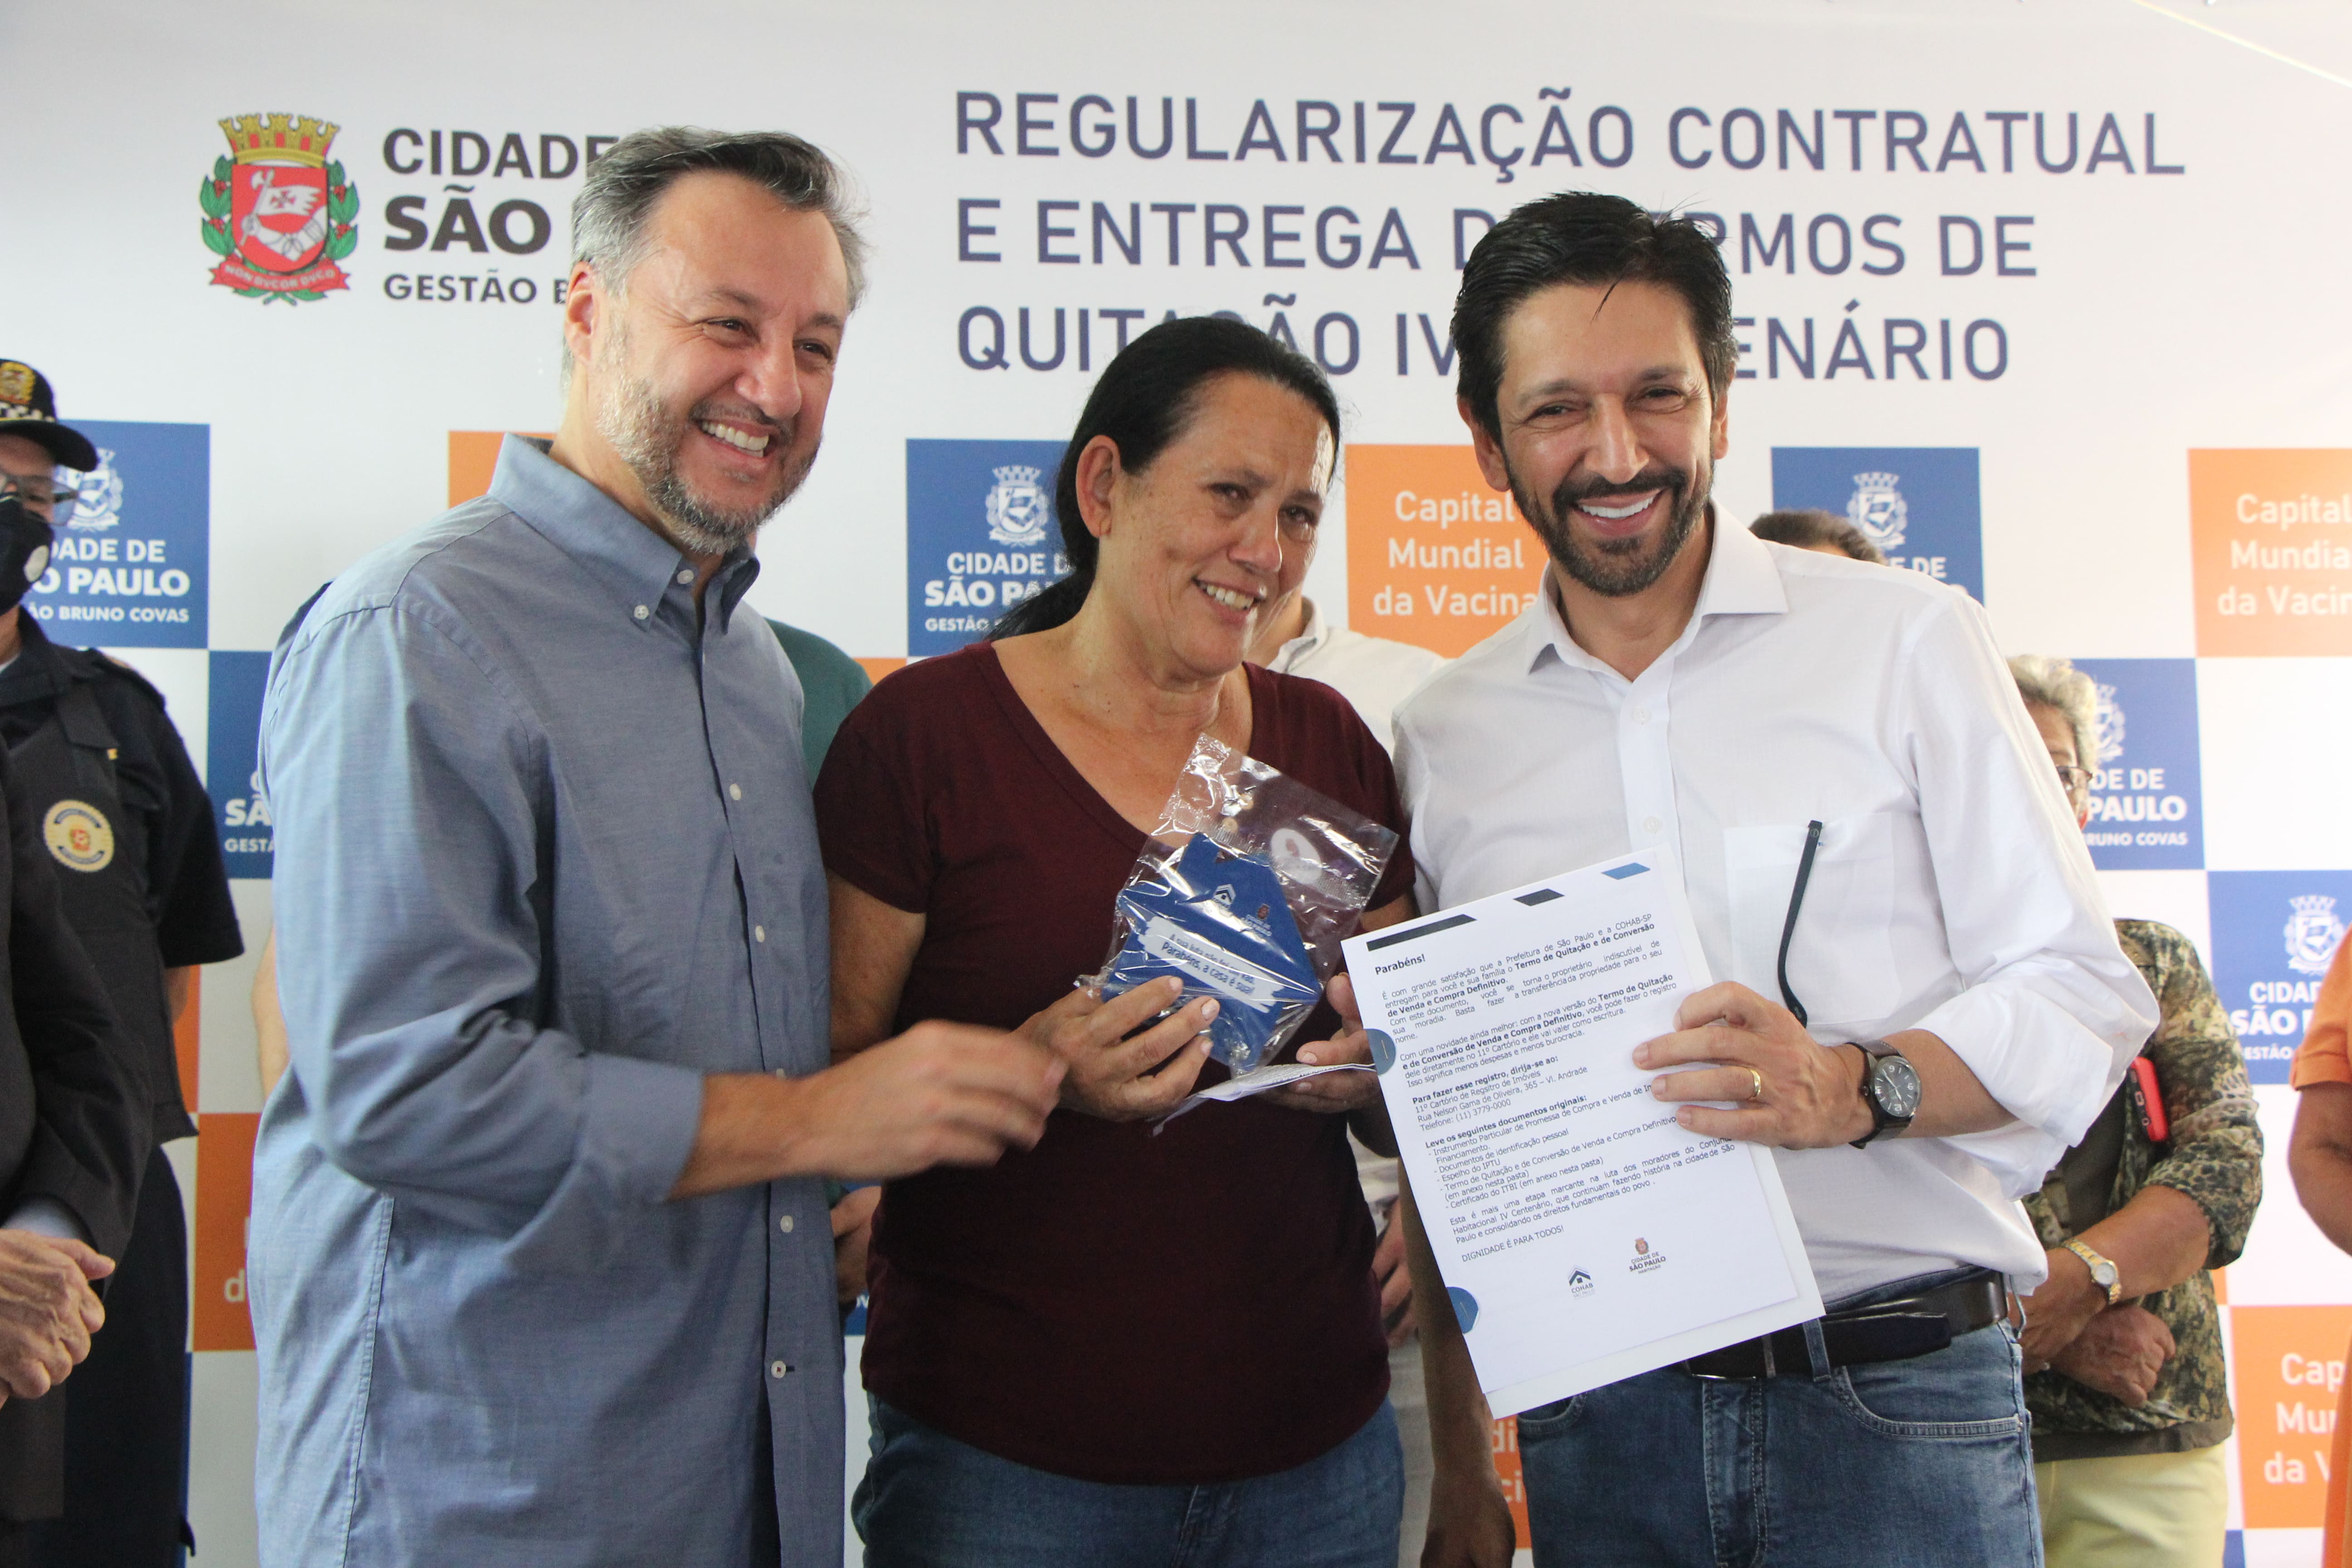 Prefeitura de São Paulo conclui o processo de regularização imobiliária do conjunto habitacional IV Centenário